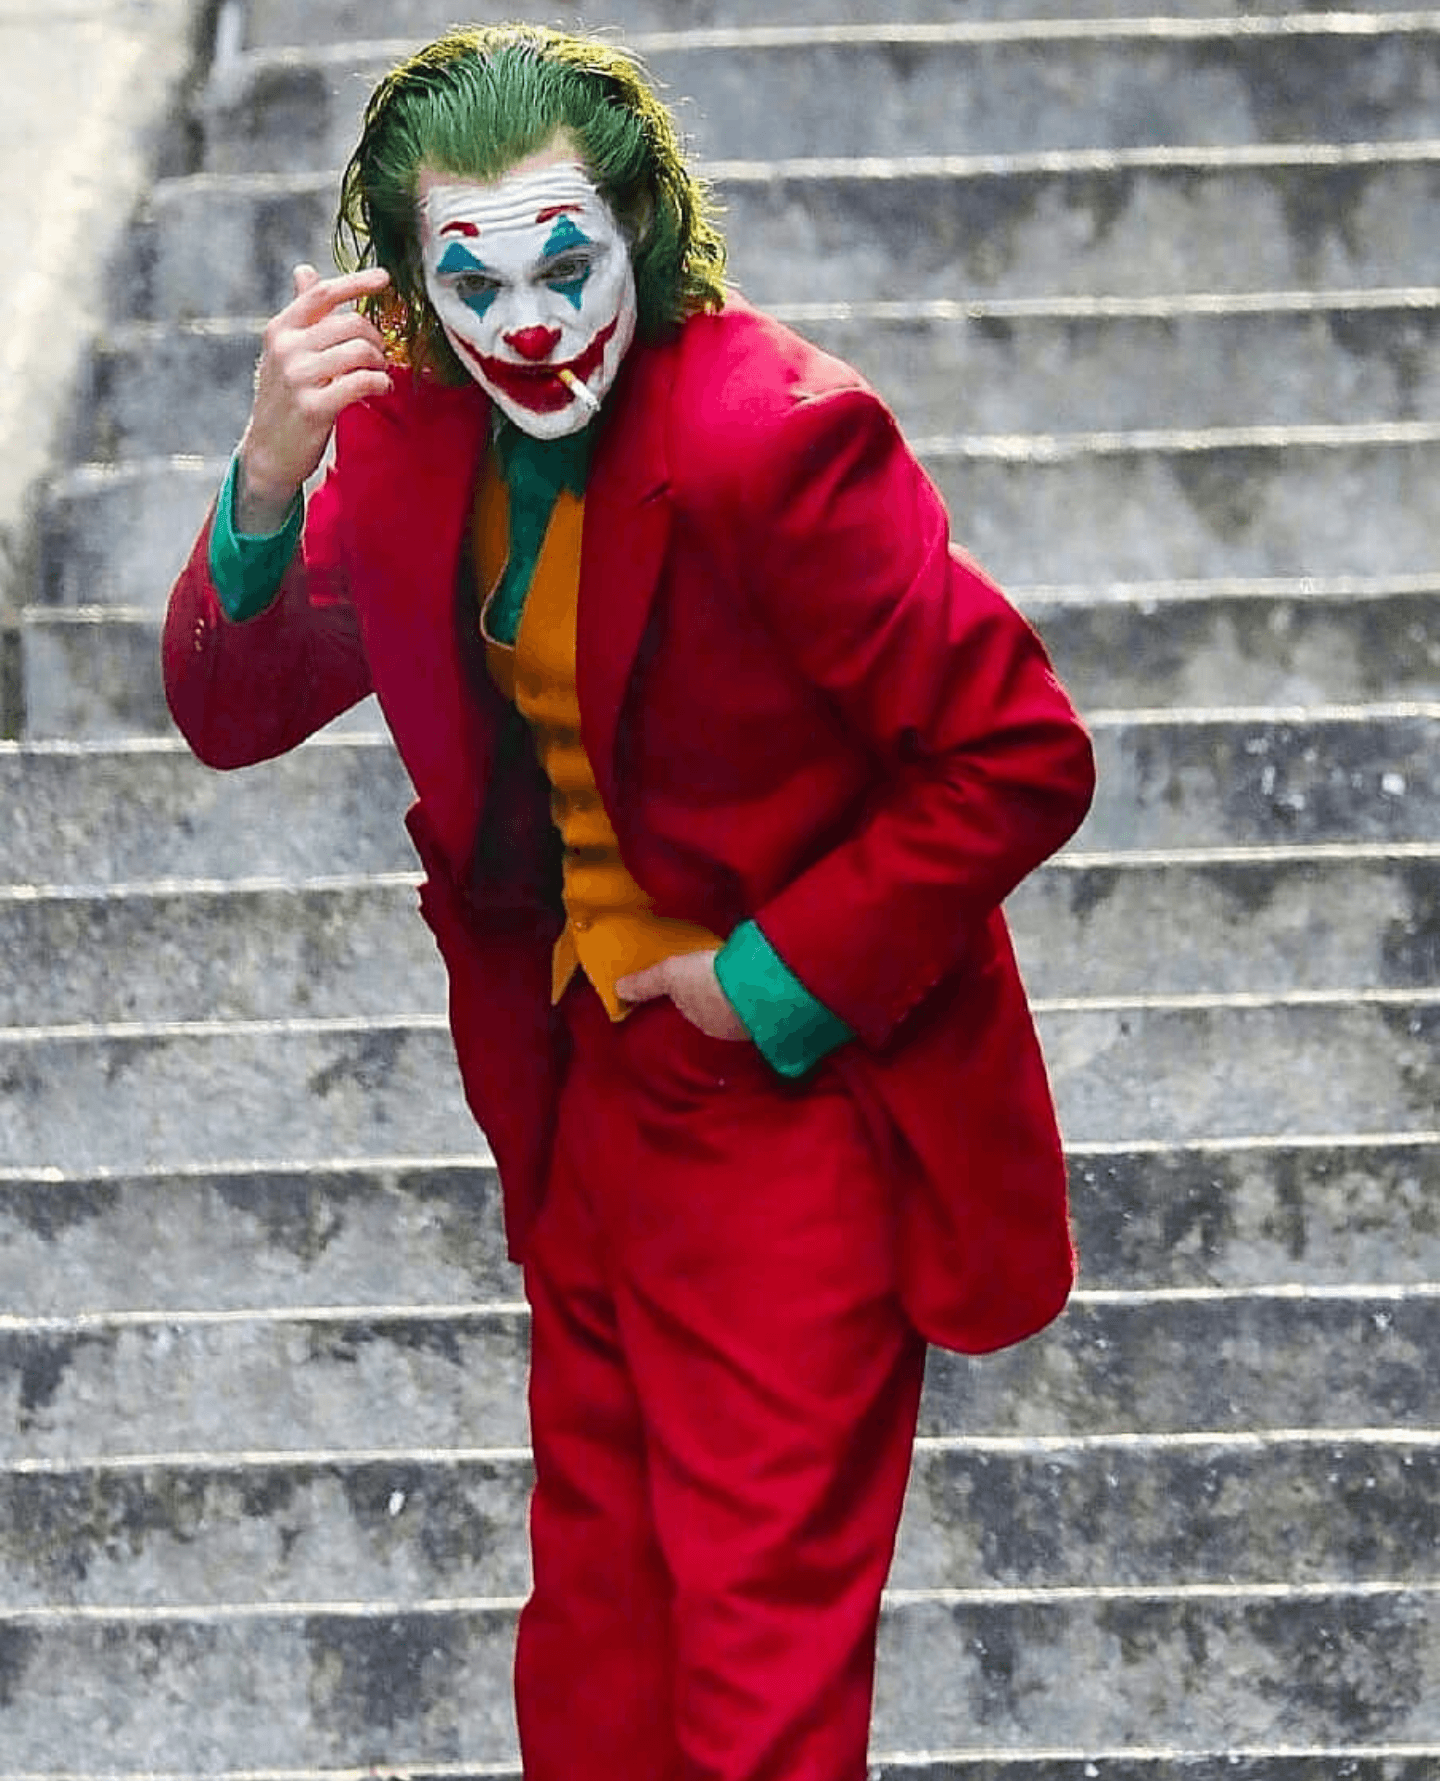 Joaquin Phoenix #joaquinphoenixjoker / Filming #joker